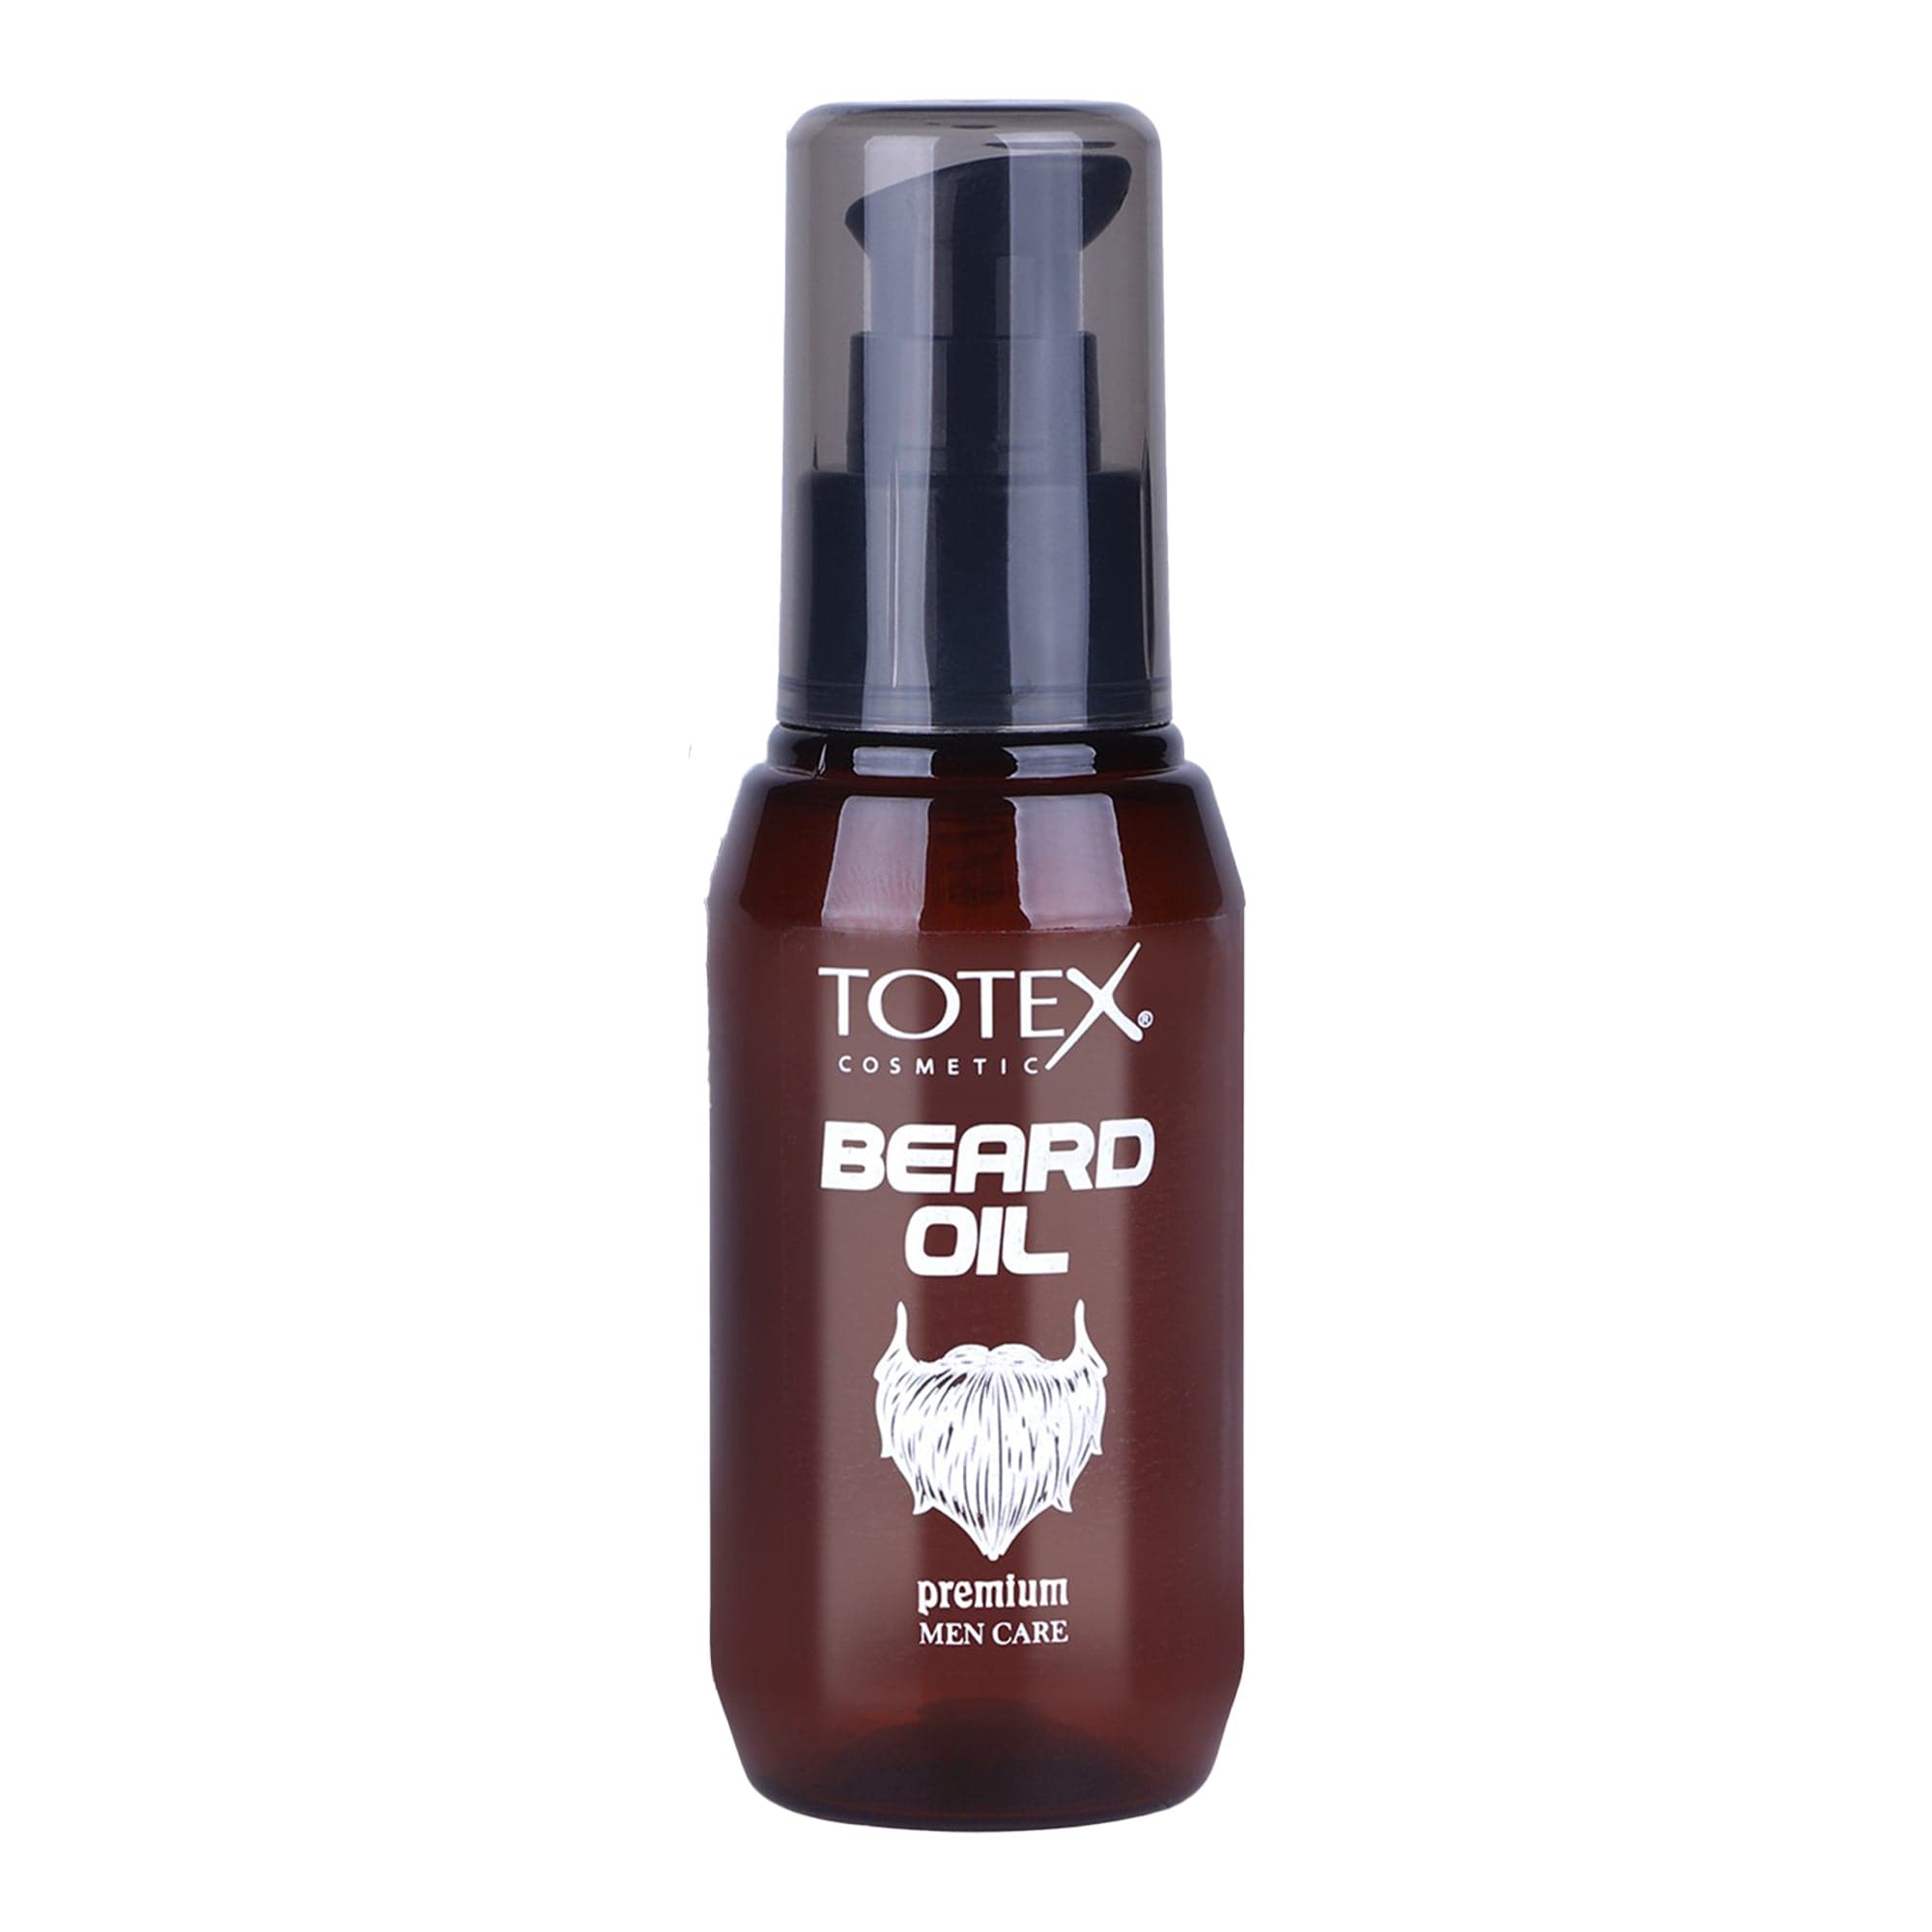 Totex - Beard Oil 75ml